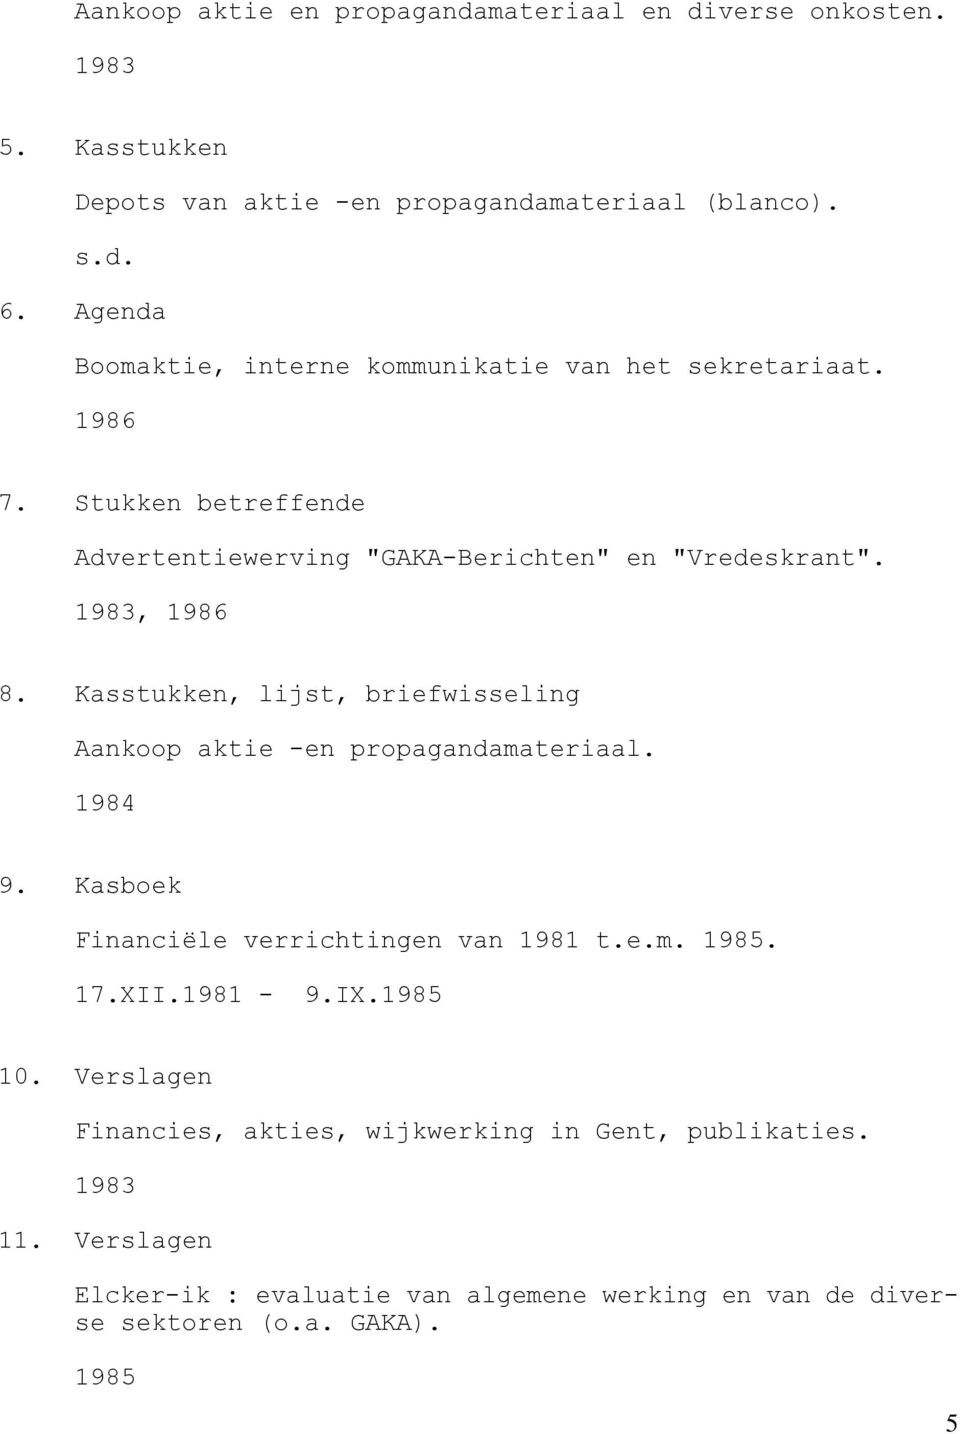 Kasstukken, lijst, briefwisseling Aankoop aktie -en propagandamateriaal. 1984 9. Kasboek Financiële verrichtingen van 1981 t.e.m. 1985. 17.XII.1981-9.IX.